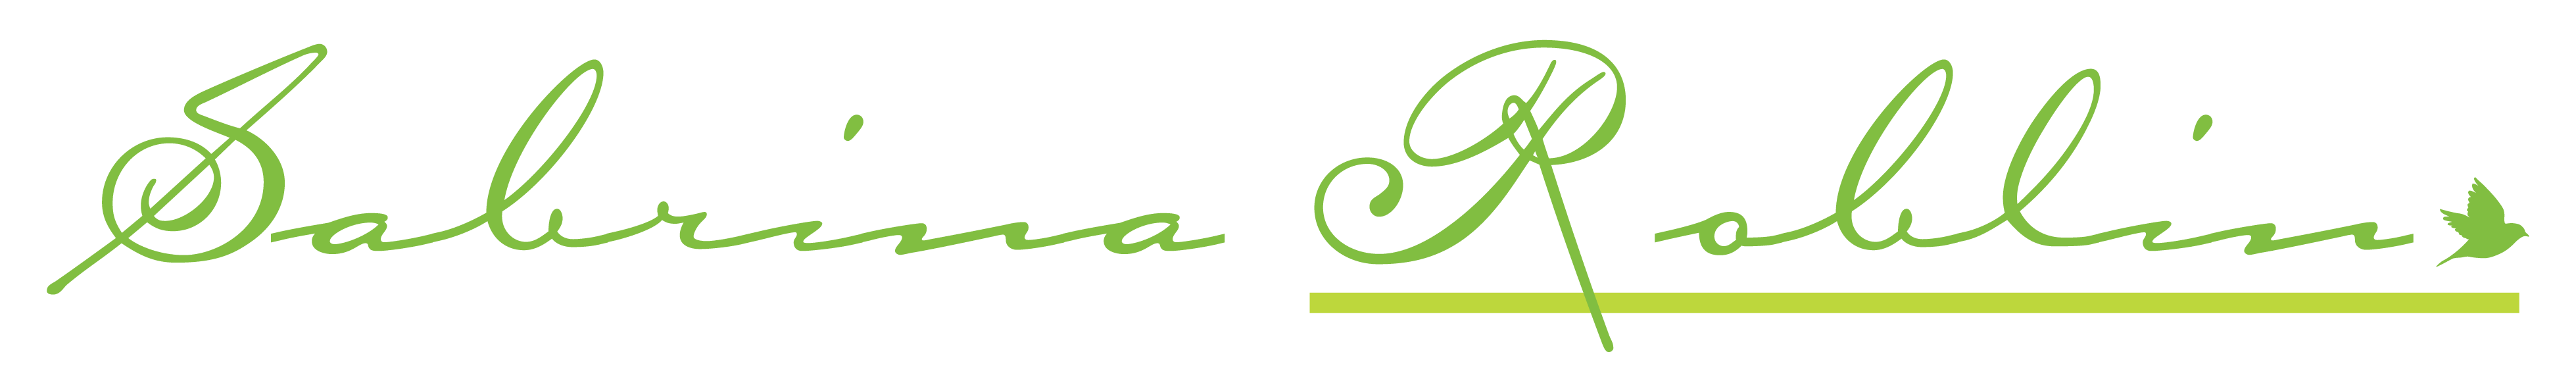 sabrina roblin logo